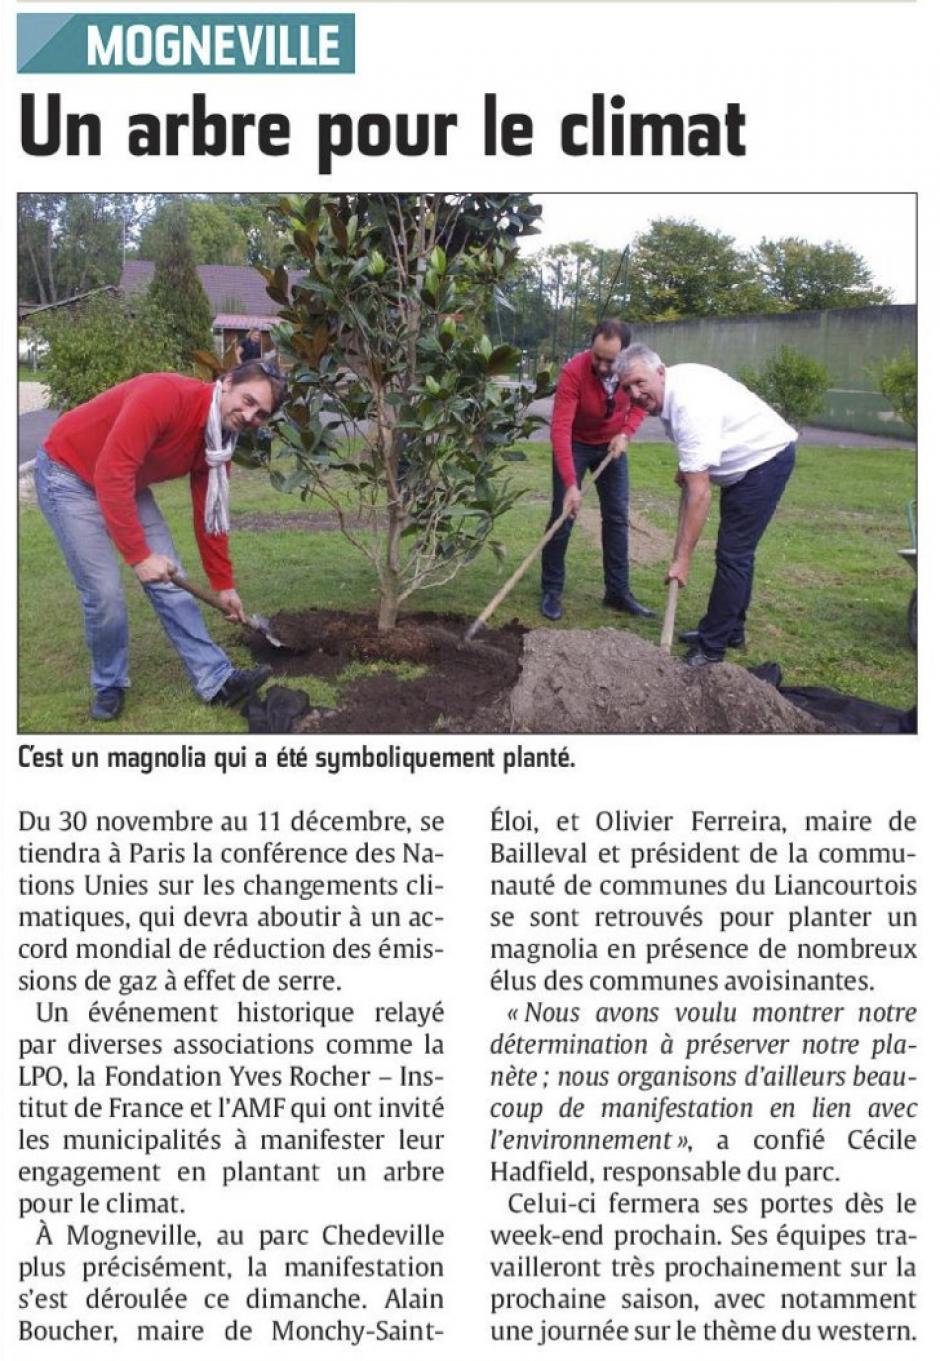 20150923-CP-Mogneville-Un arbre pour le climat [Alain Boucher]